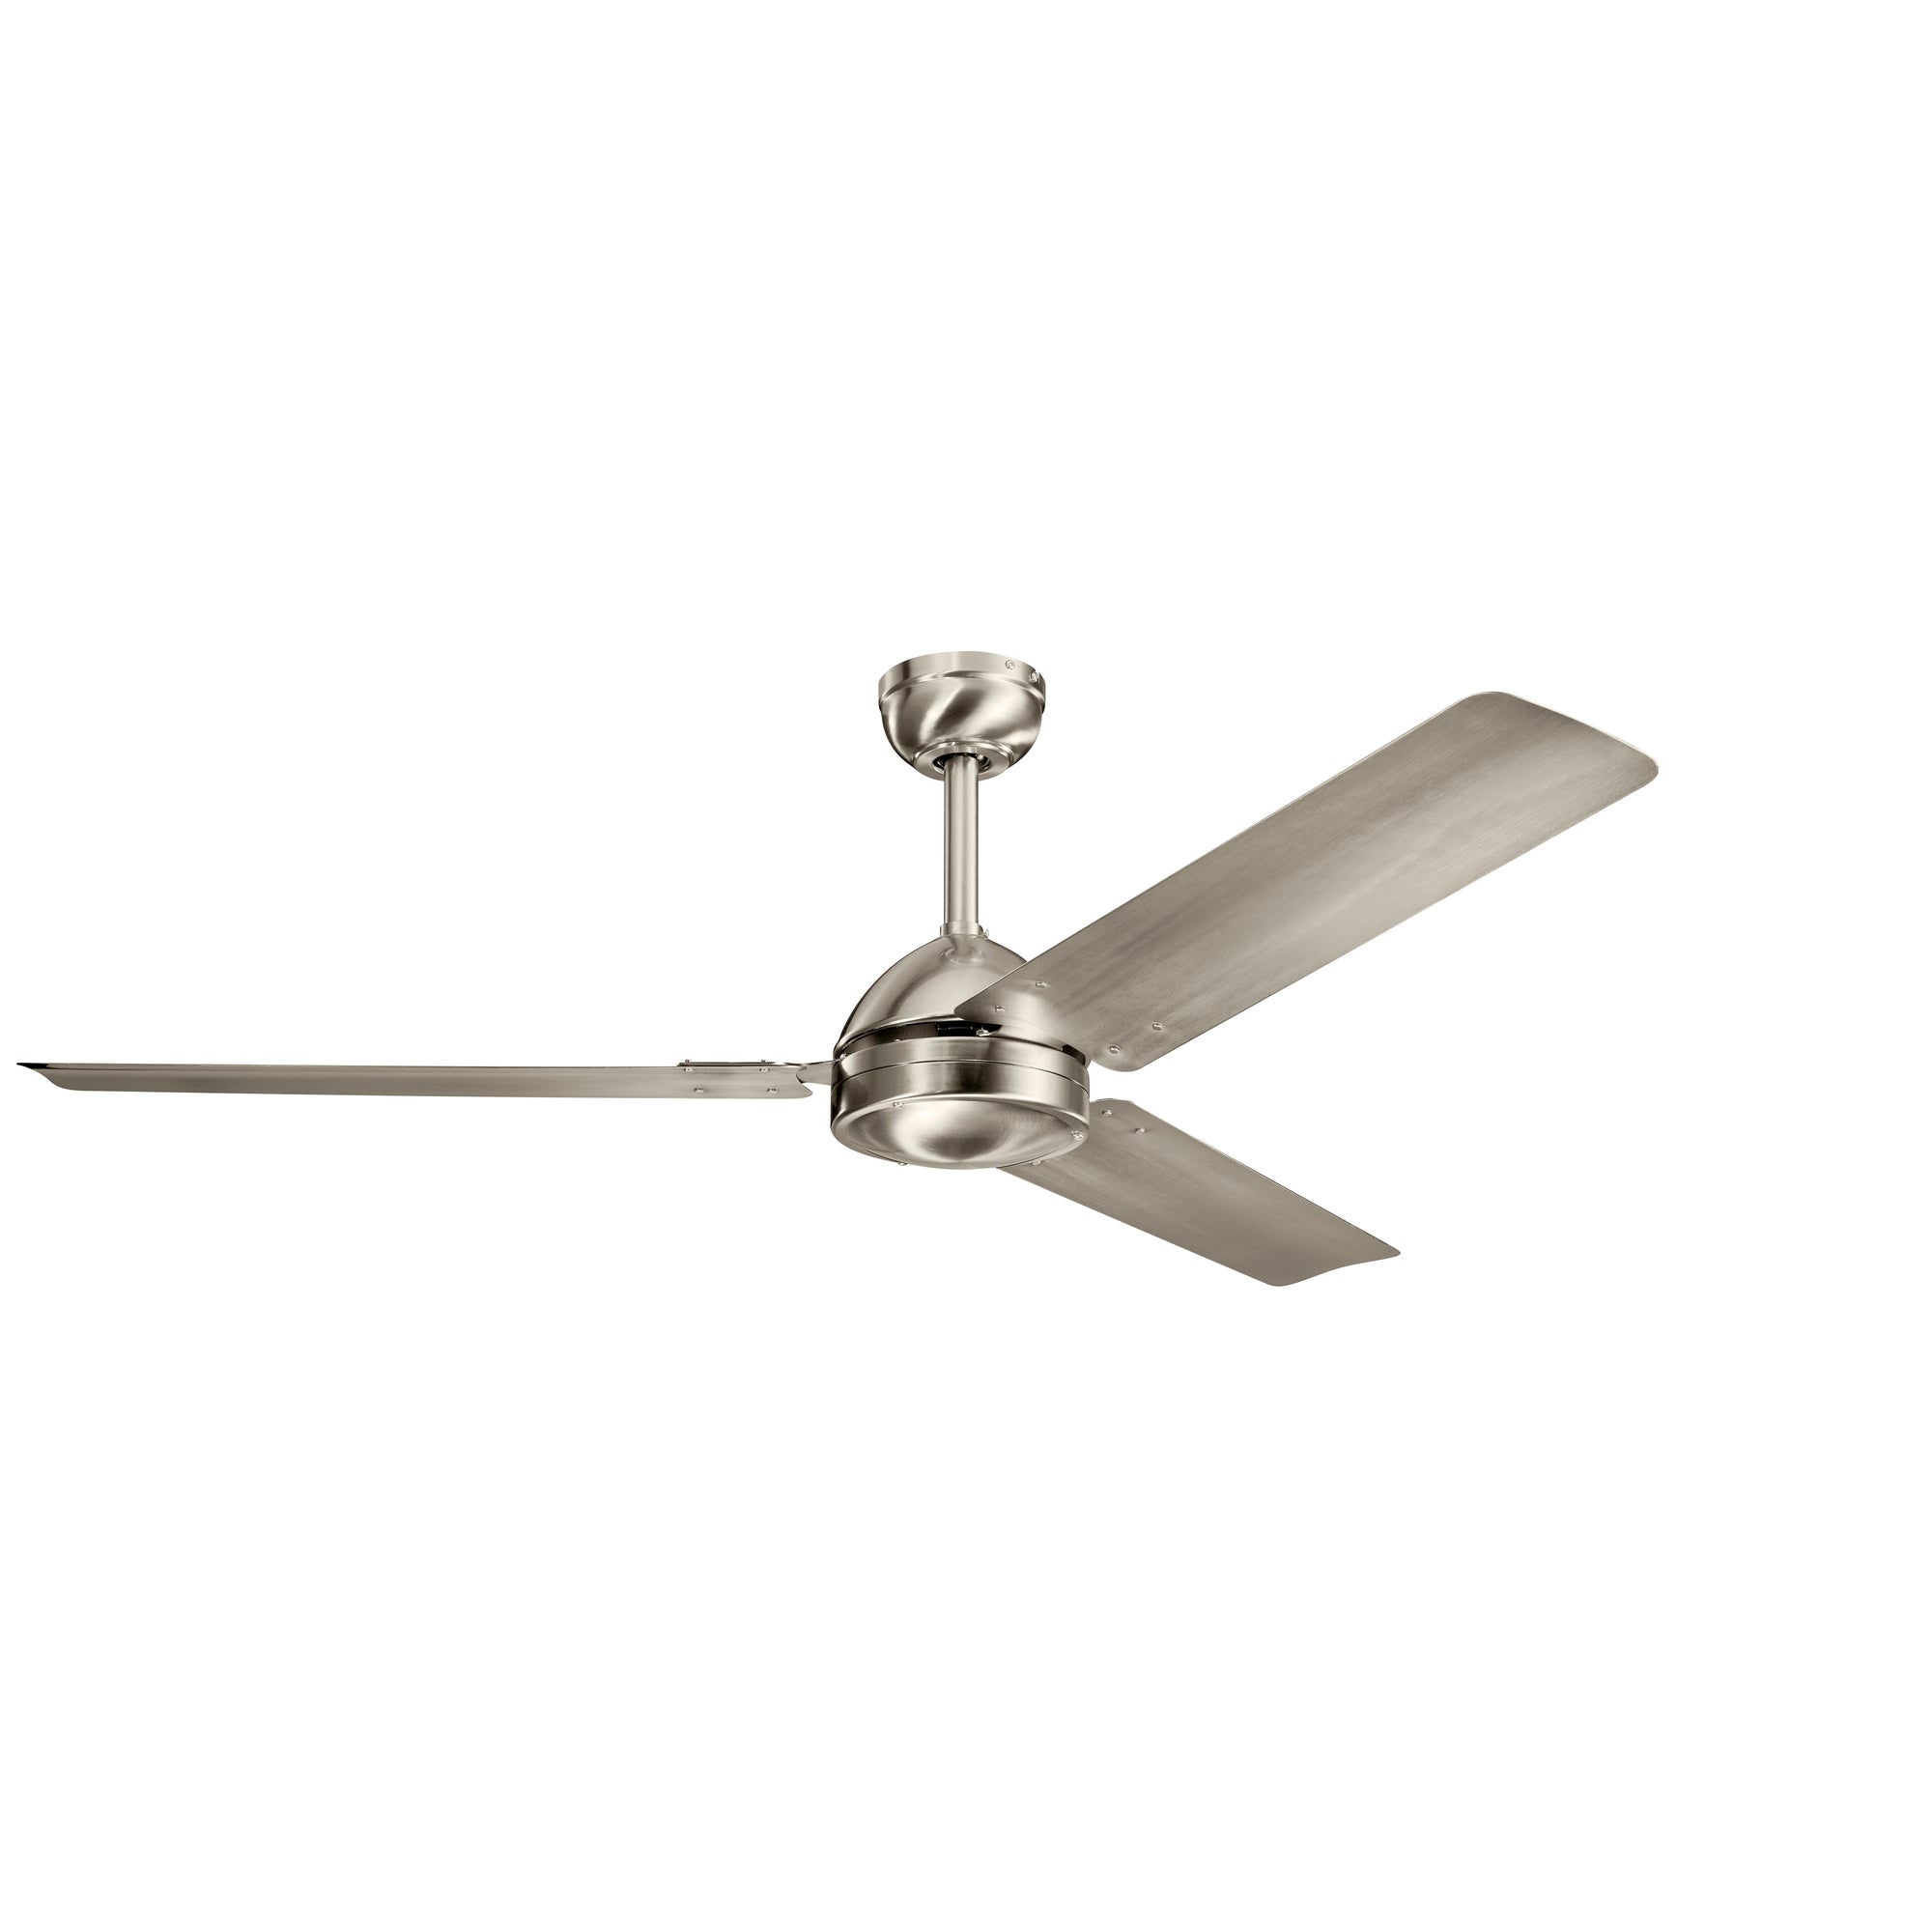 TODO Ceiling fan Stainless steel - 330025BSS | KICHLER